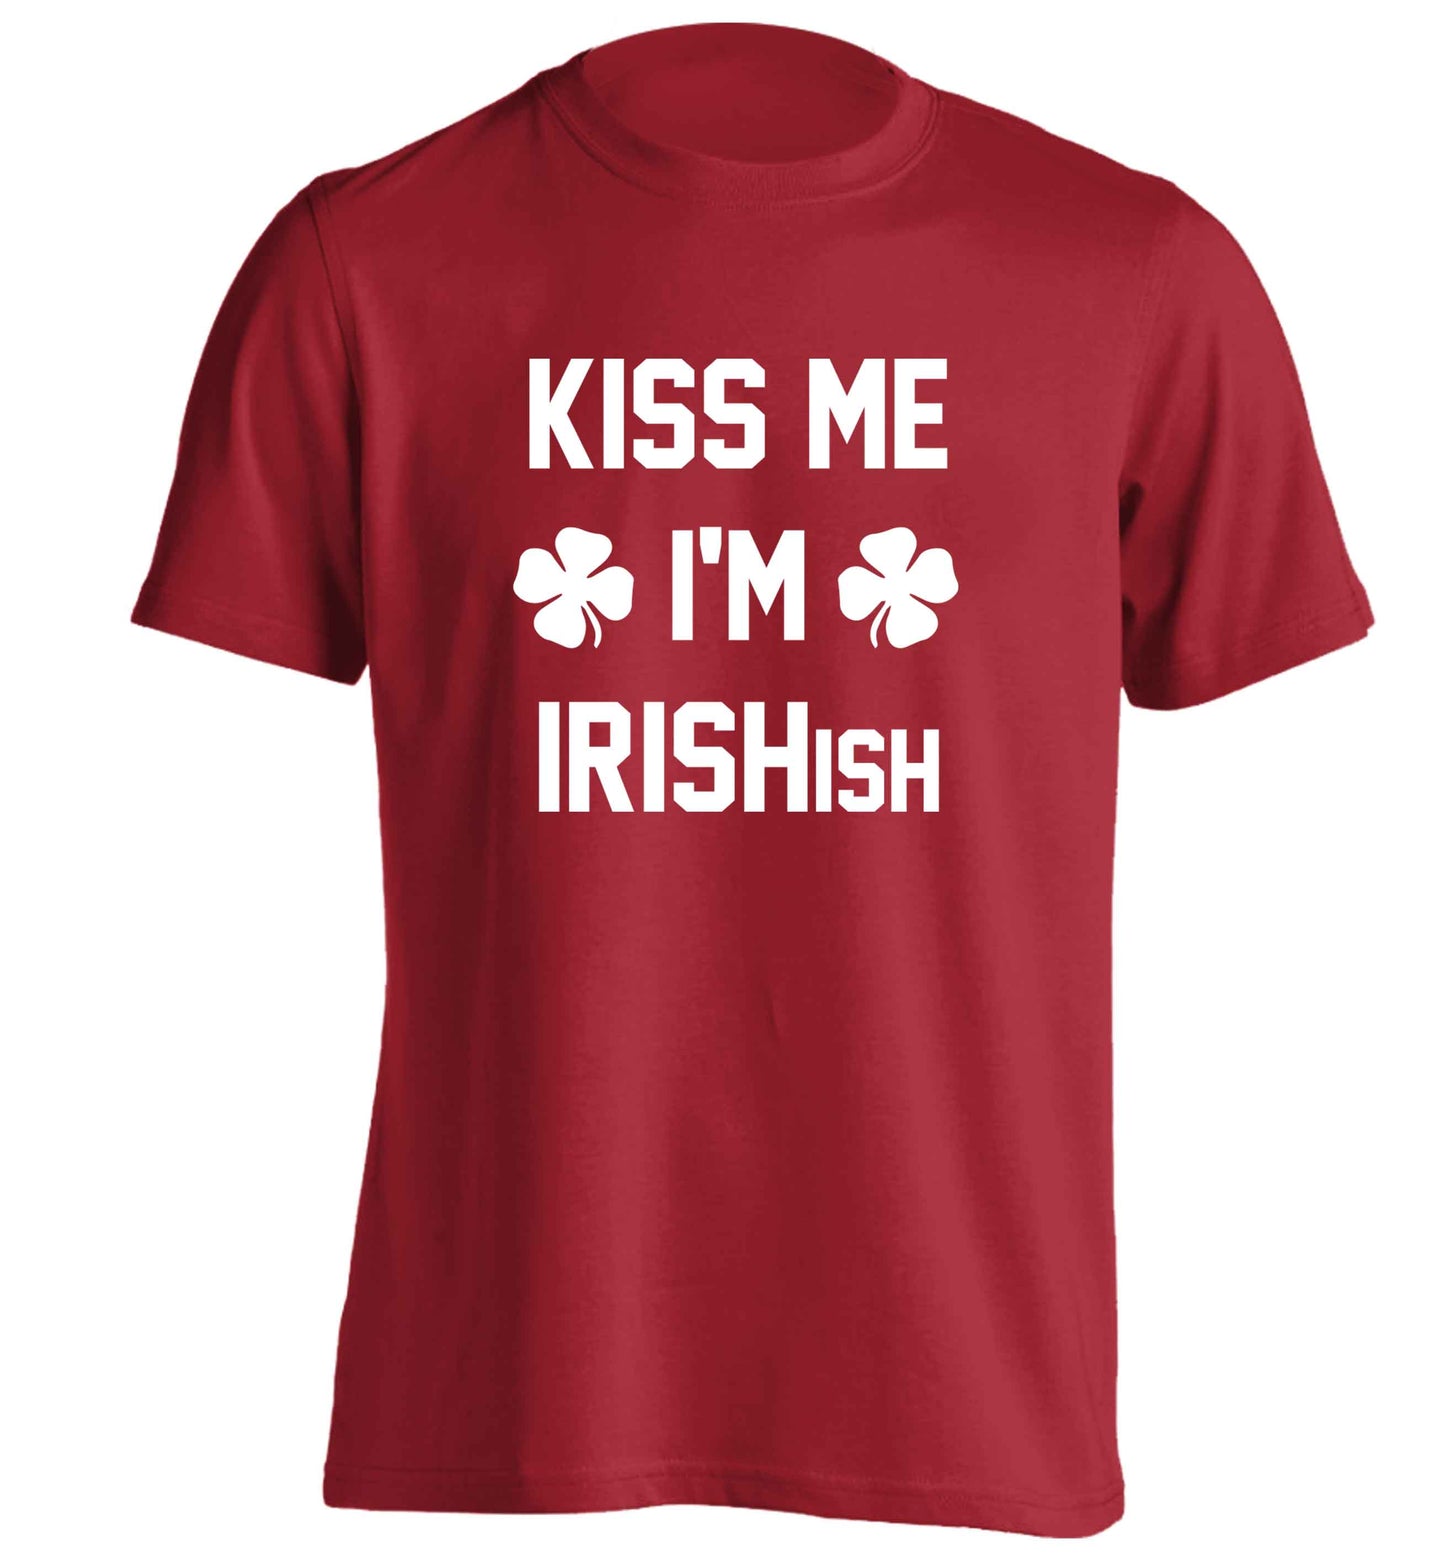 Kiss me I'm Irishish adults unisex red Tshirt 2XL